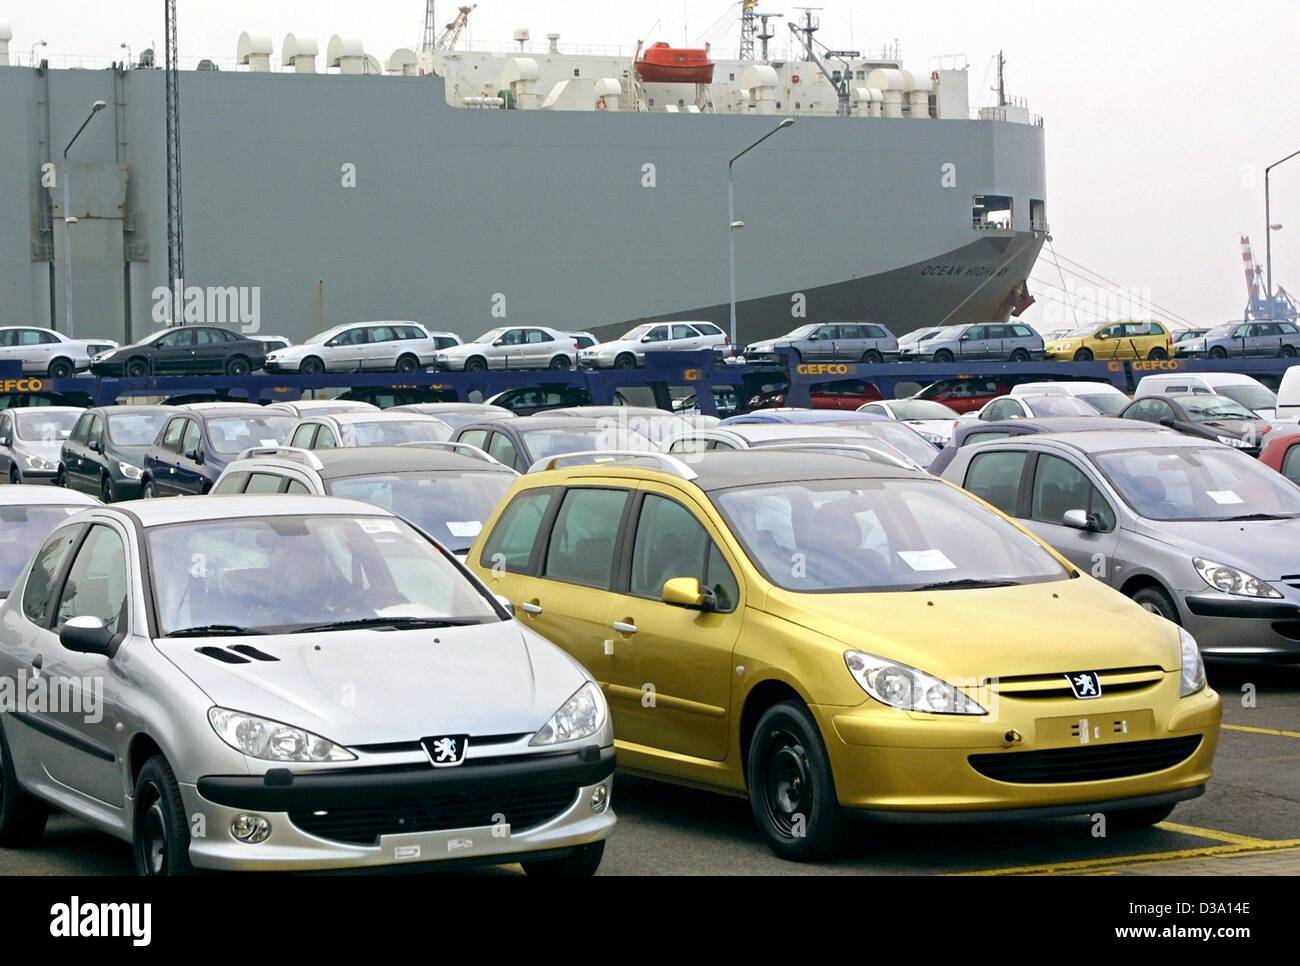 (Dpa) - warten französische Peugeot Autos am Autoterminal der BLG-Harms Automobil Logistik in Bremerhaven, Deutschland, 11. April 2002 bestiegen werden. Kreisverkehr 1500 Schiffe Transport mehr als 1,2 Millionen Fahrzeuge von hier jedes Jahr, wodurch der Hafen einer der wichtigsten Auto Häfen der Welt. Stockfoto